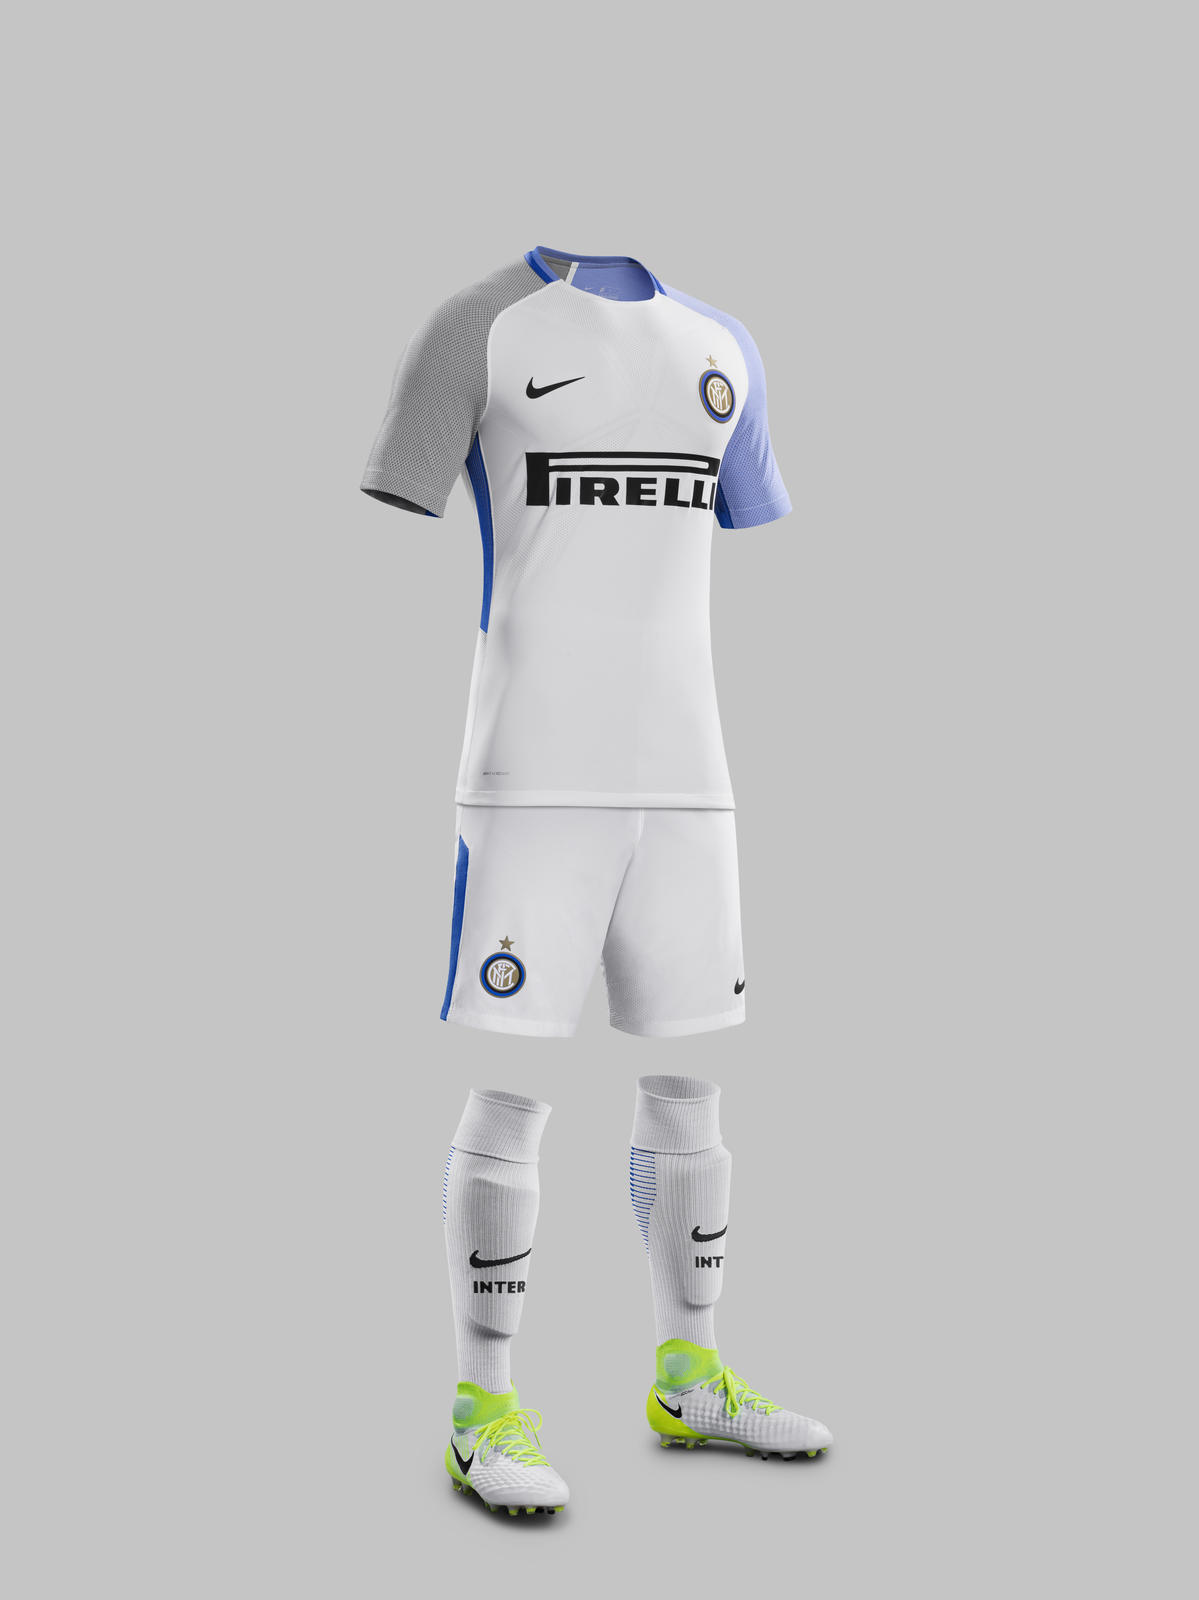 En respuesta a la Intrusión compresión Nike launch Inter Milan's new 2017-18 away kit!